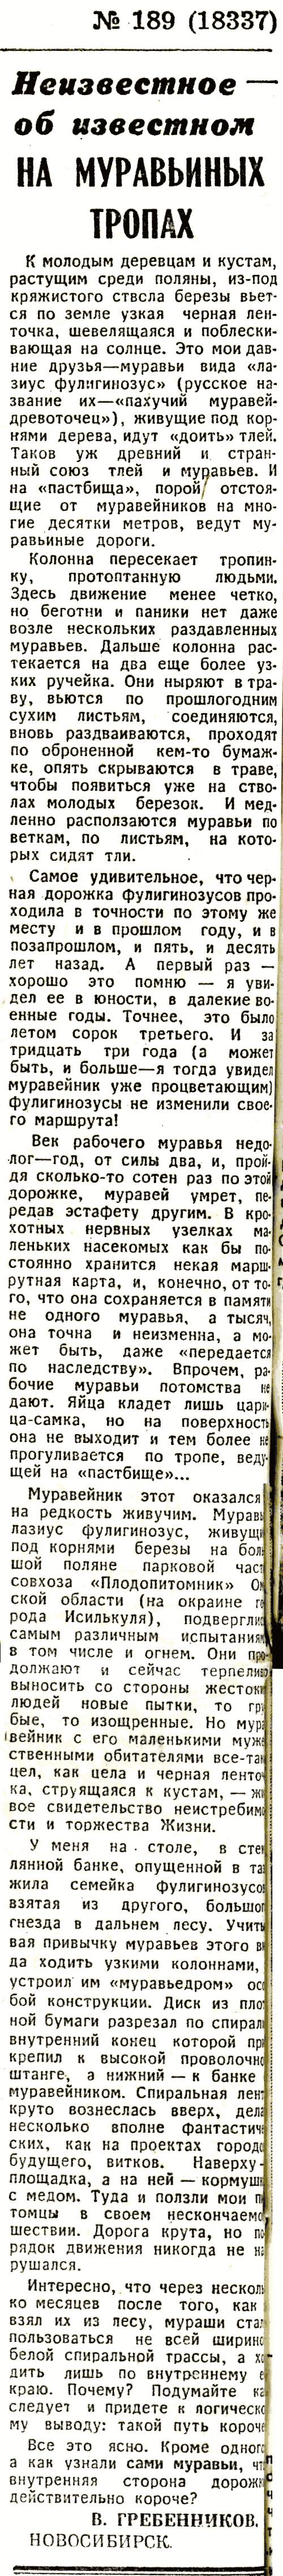 На муравьиных тропах. В.С. Гребенников. Известия, 12.08.1976.